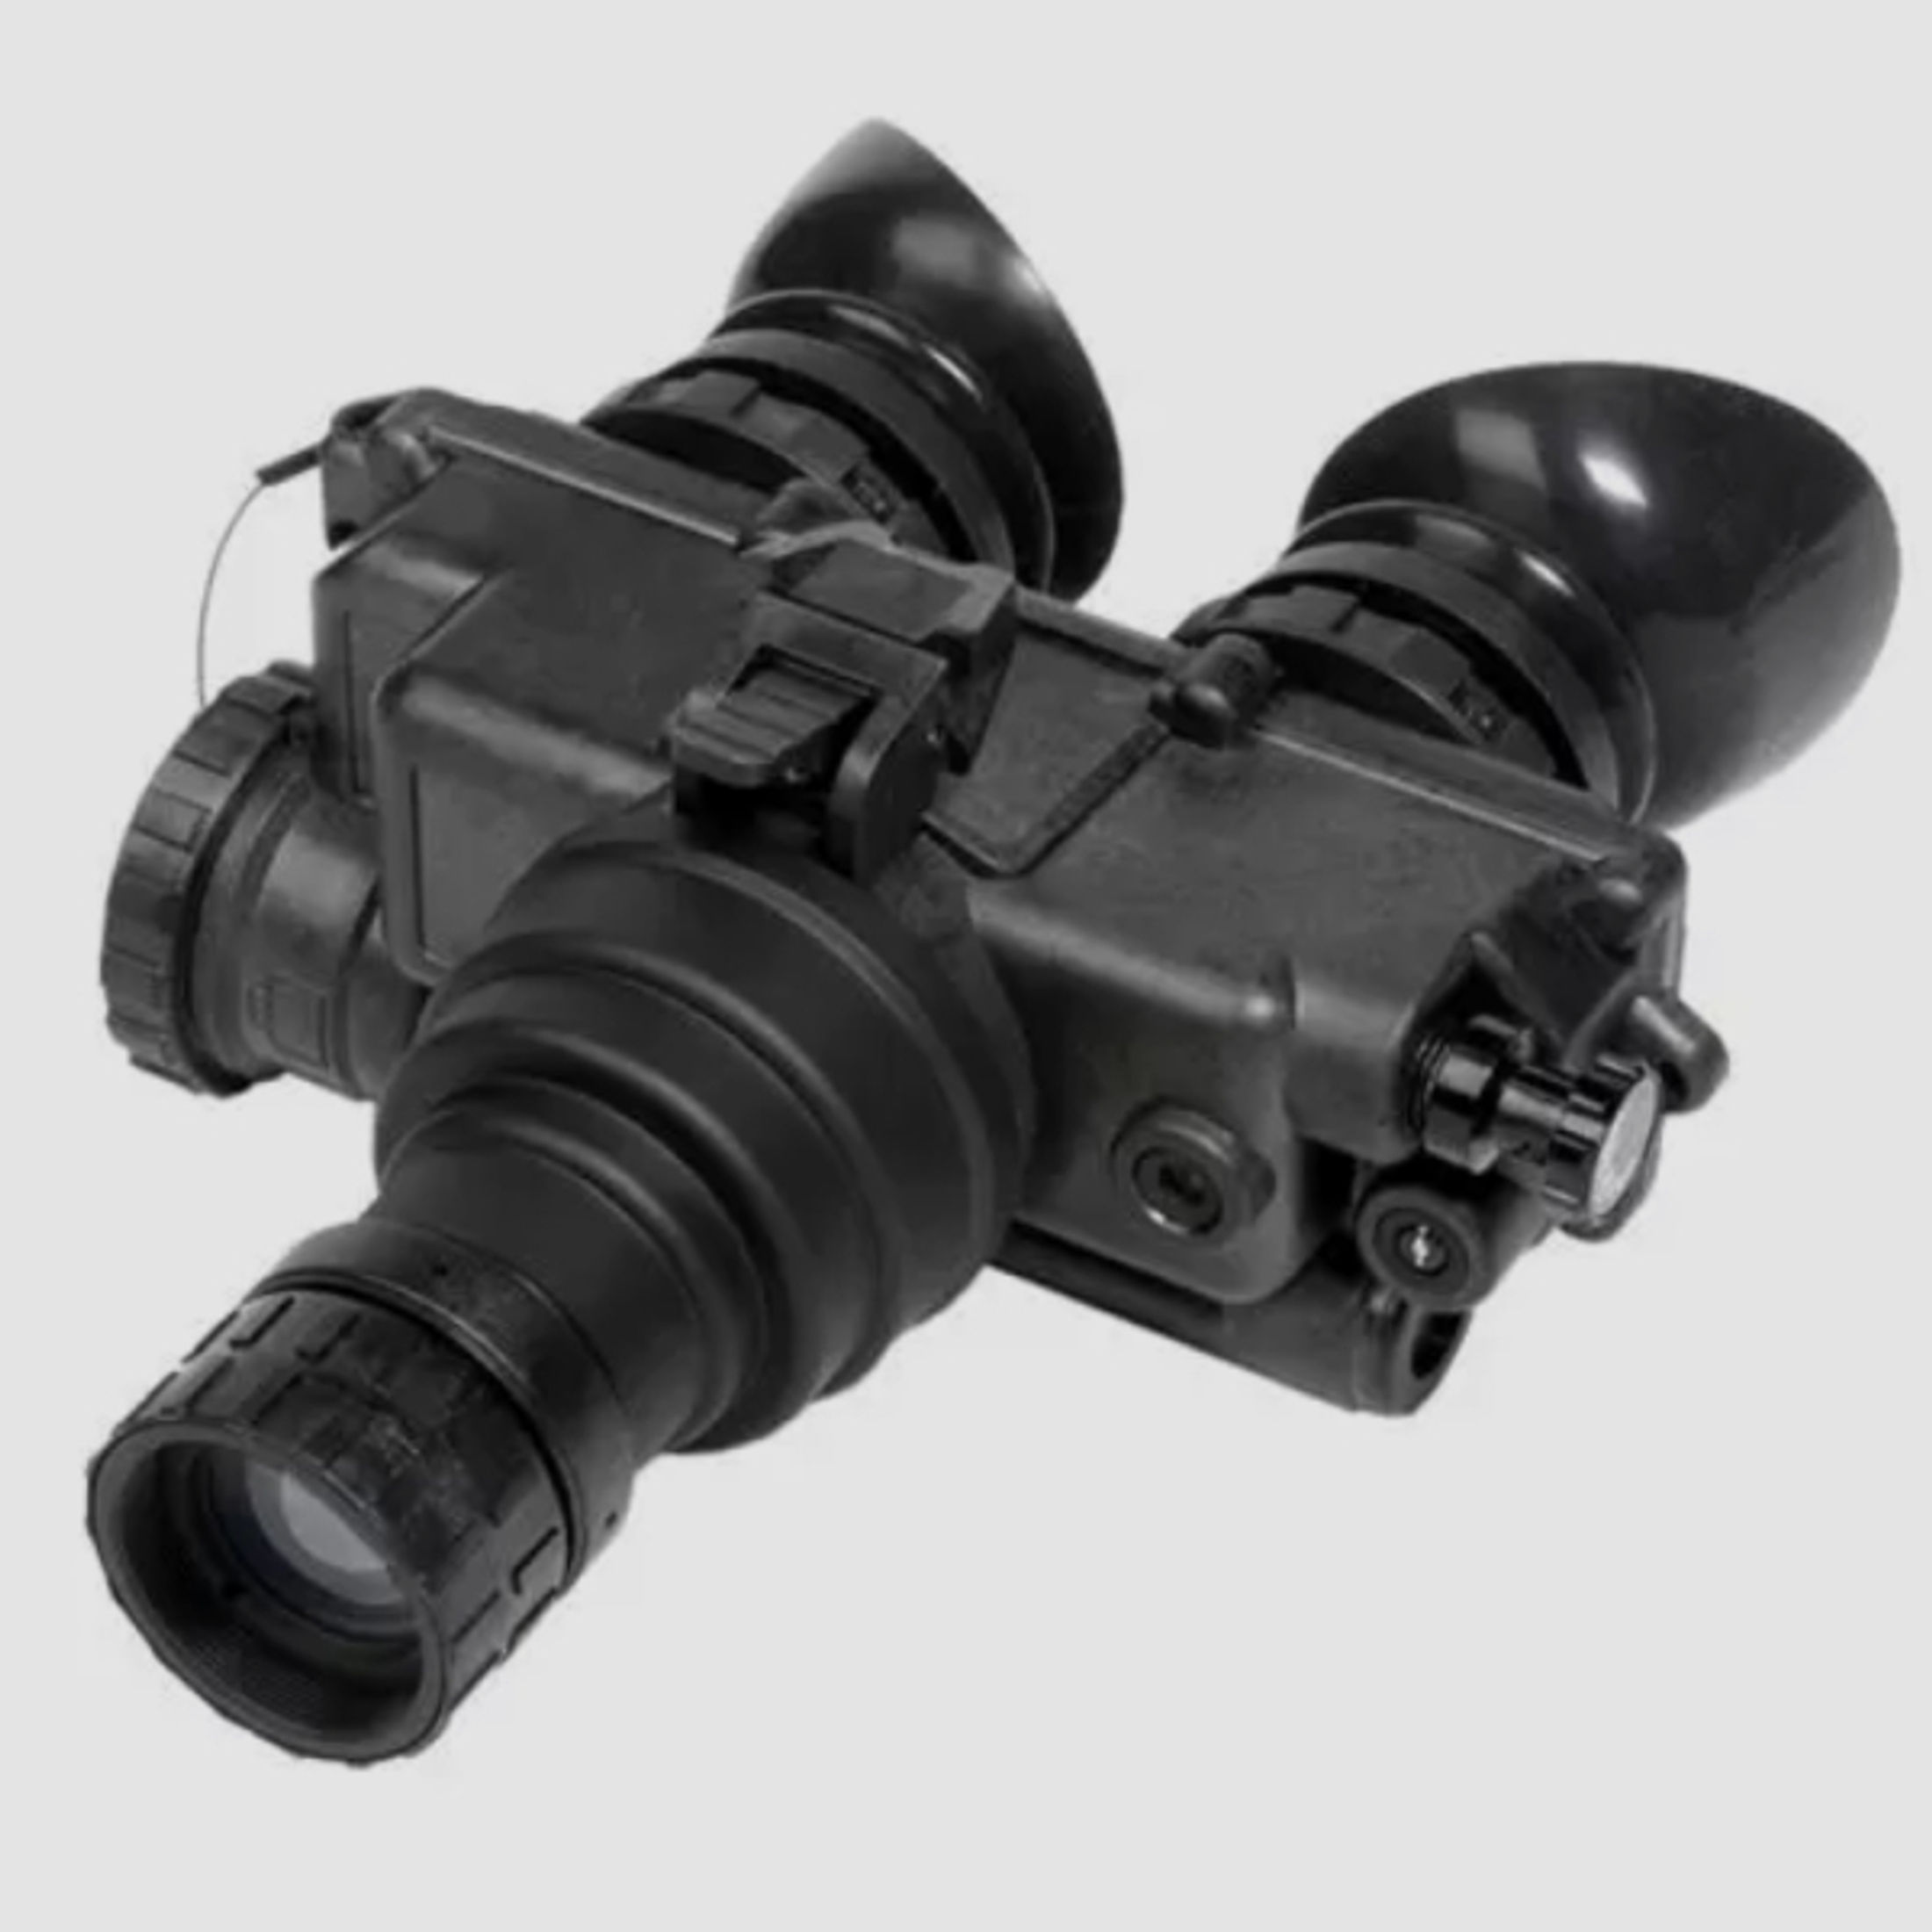 PVS7 Nachtsichtgerät Goggles Gen 2+, für Jäger, Security oder Outdoor